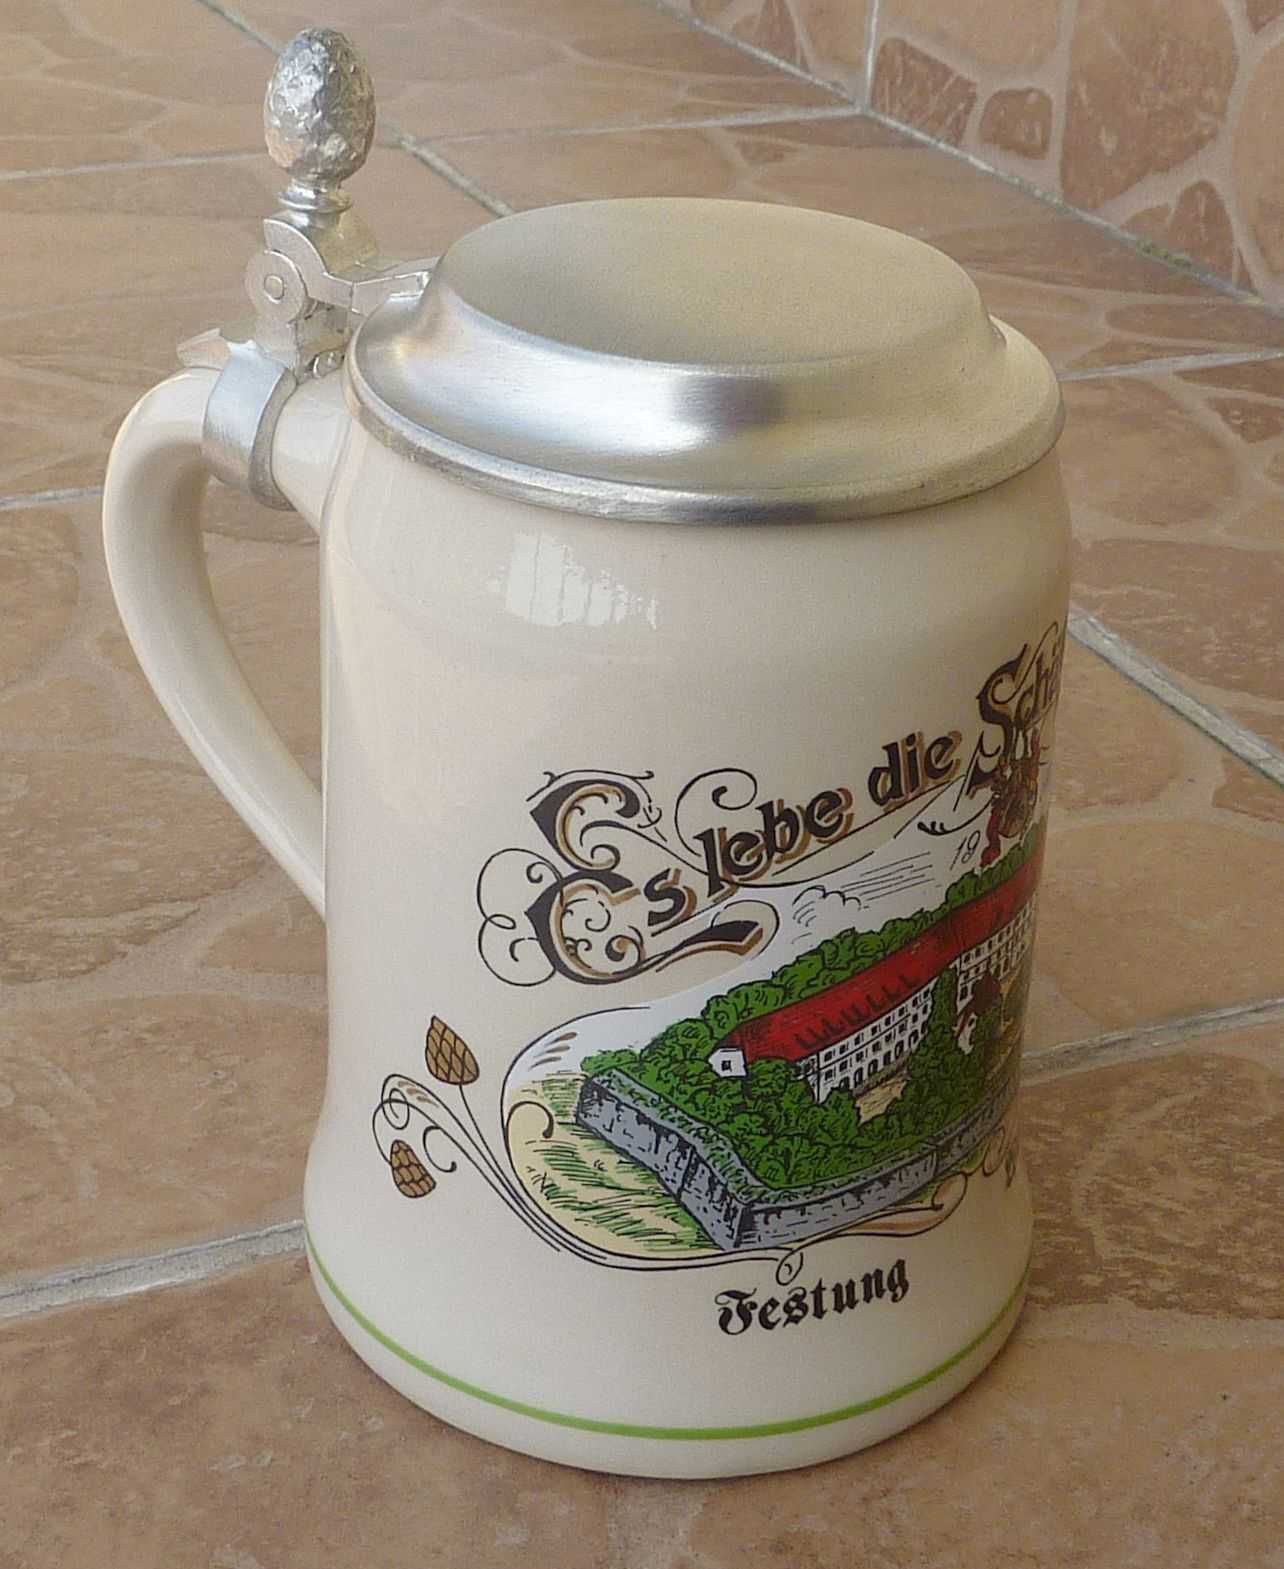 kufel z cynową klapką - Schäff Brauerei - Festung Wülzburg - 1997r.